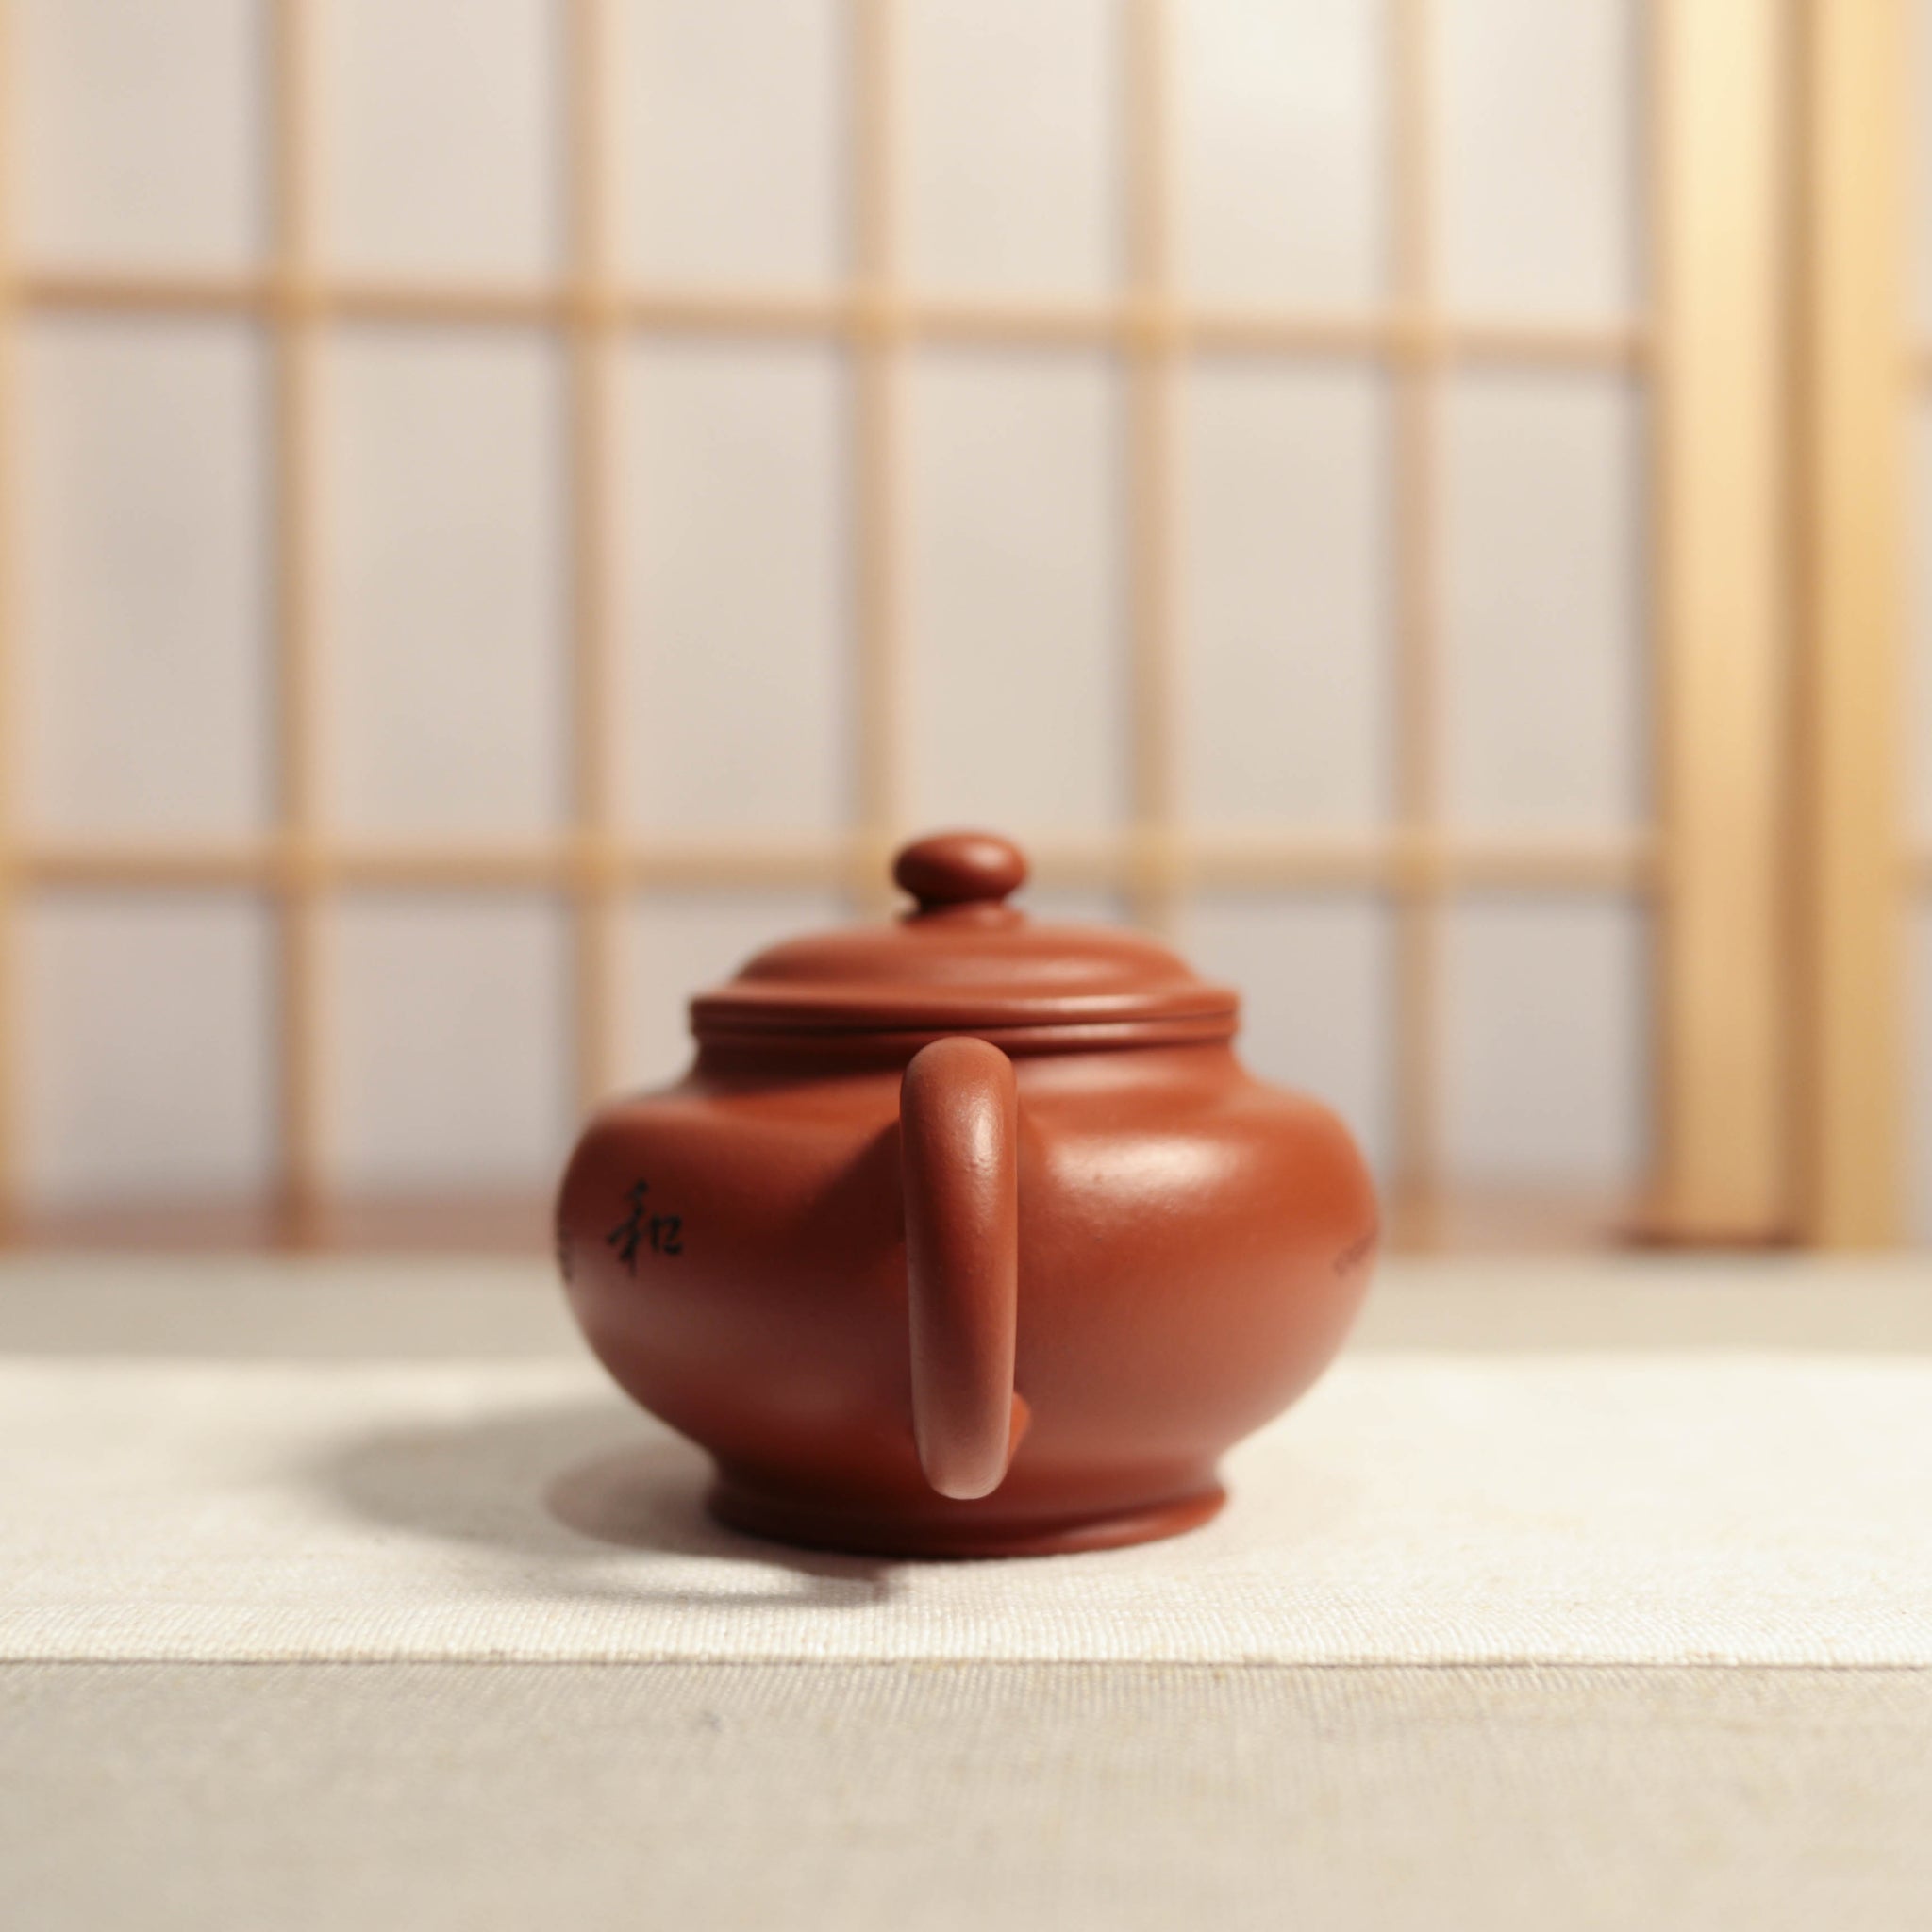 【掇子】家藏小紅泥字詞刻畫紫砂茶壺